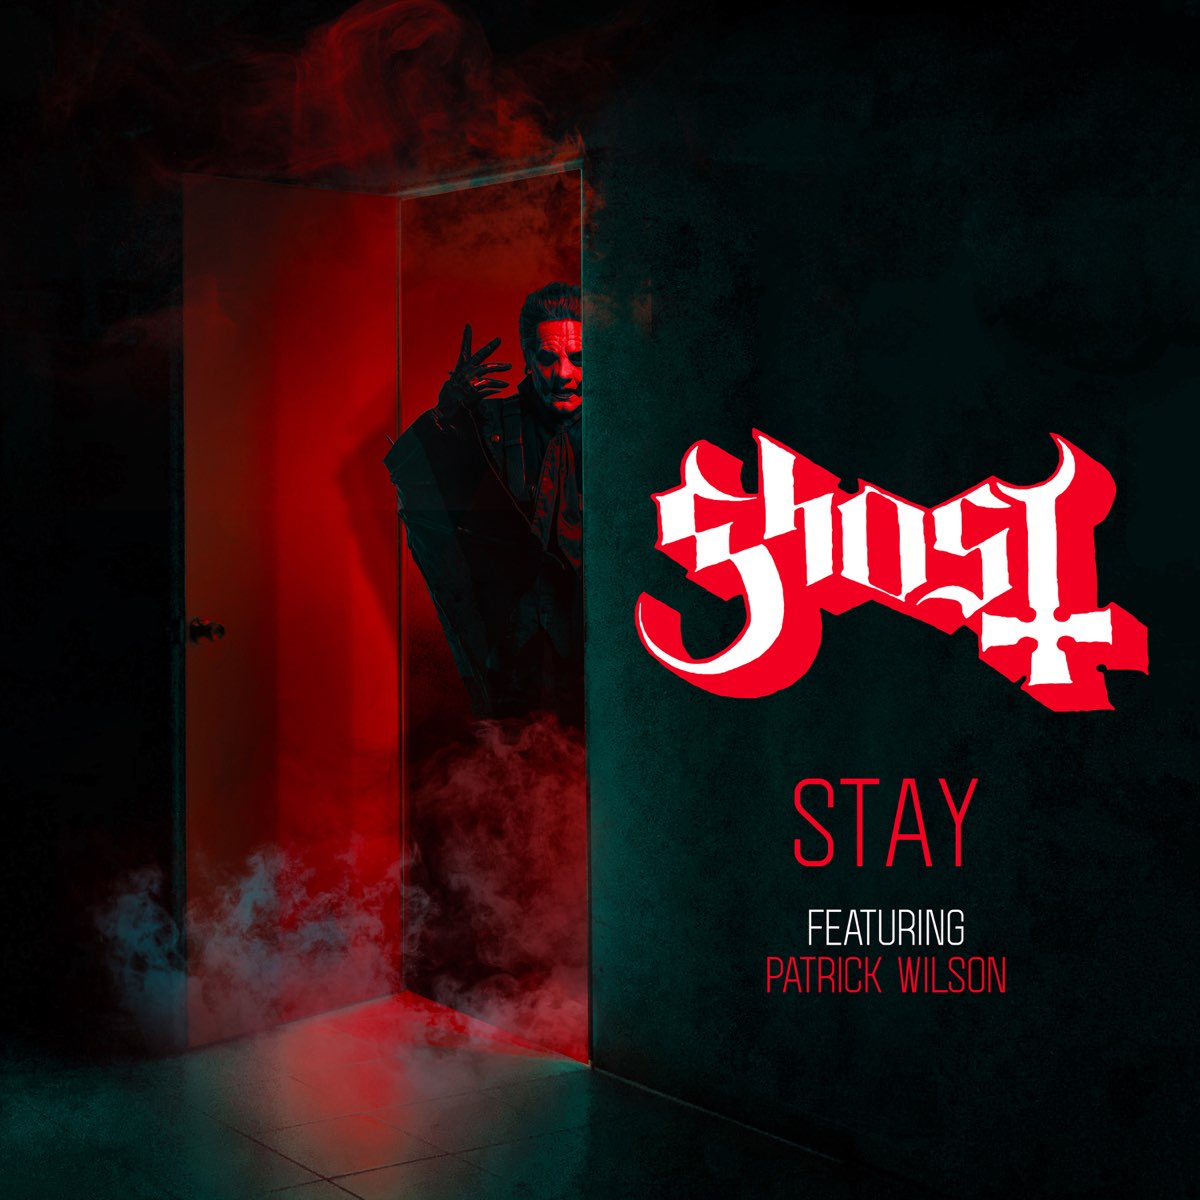 Stay (feat. Patrick Wilson) - Single” álbum de Ghost en Apple Music